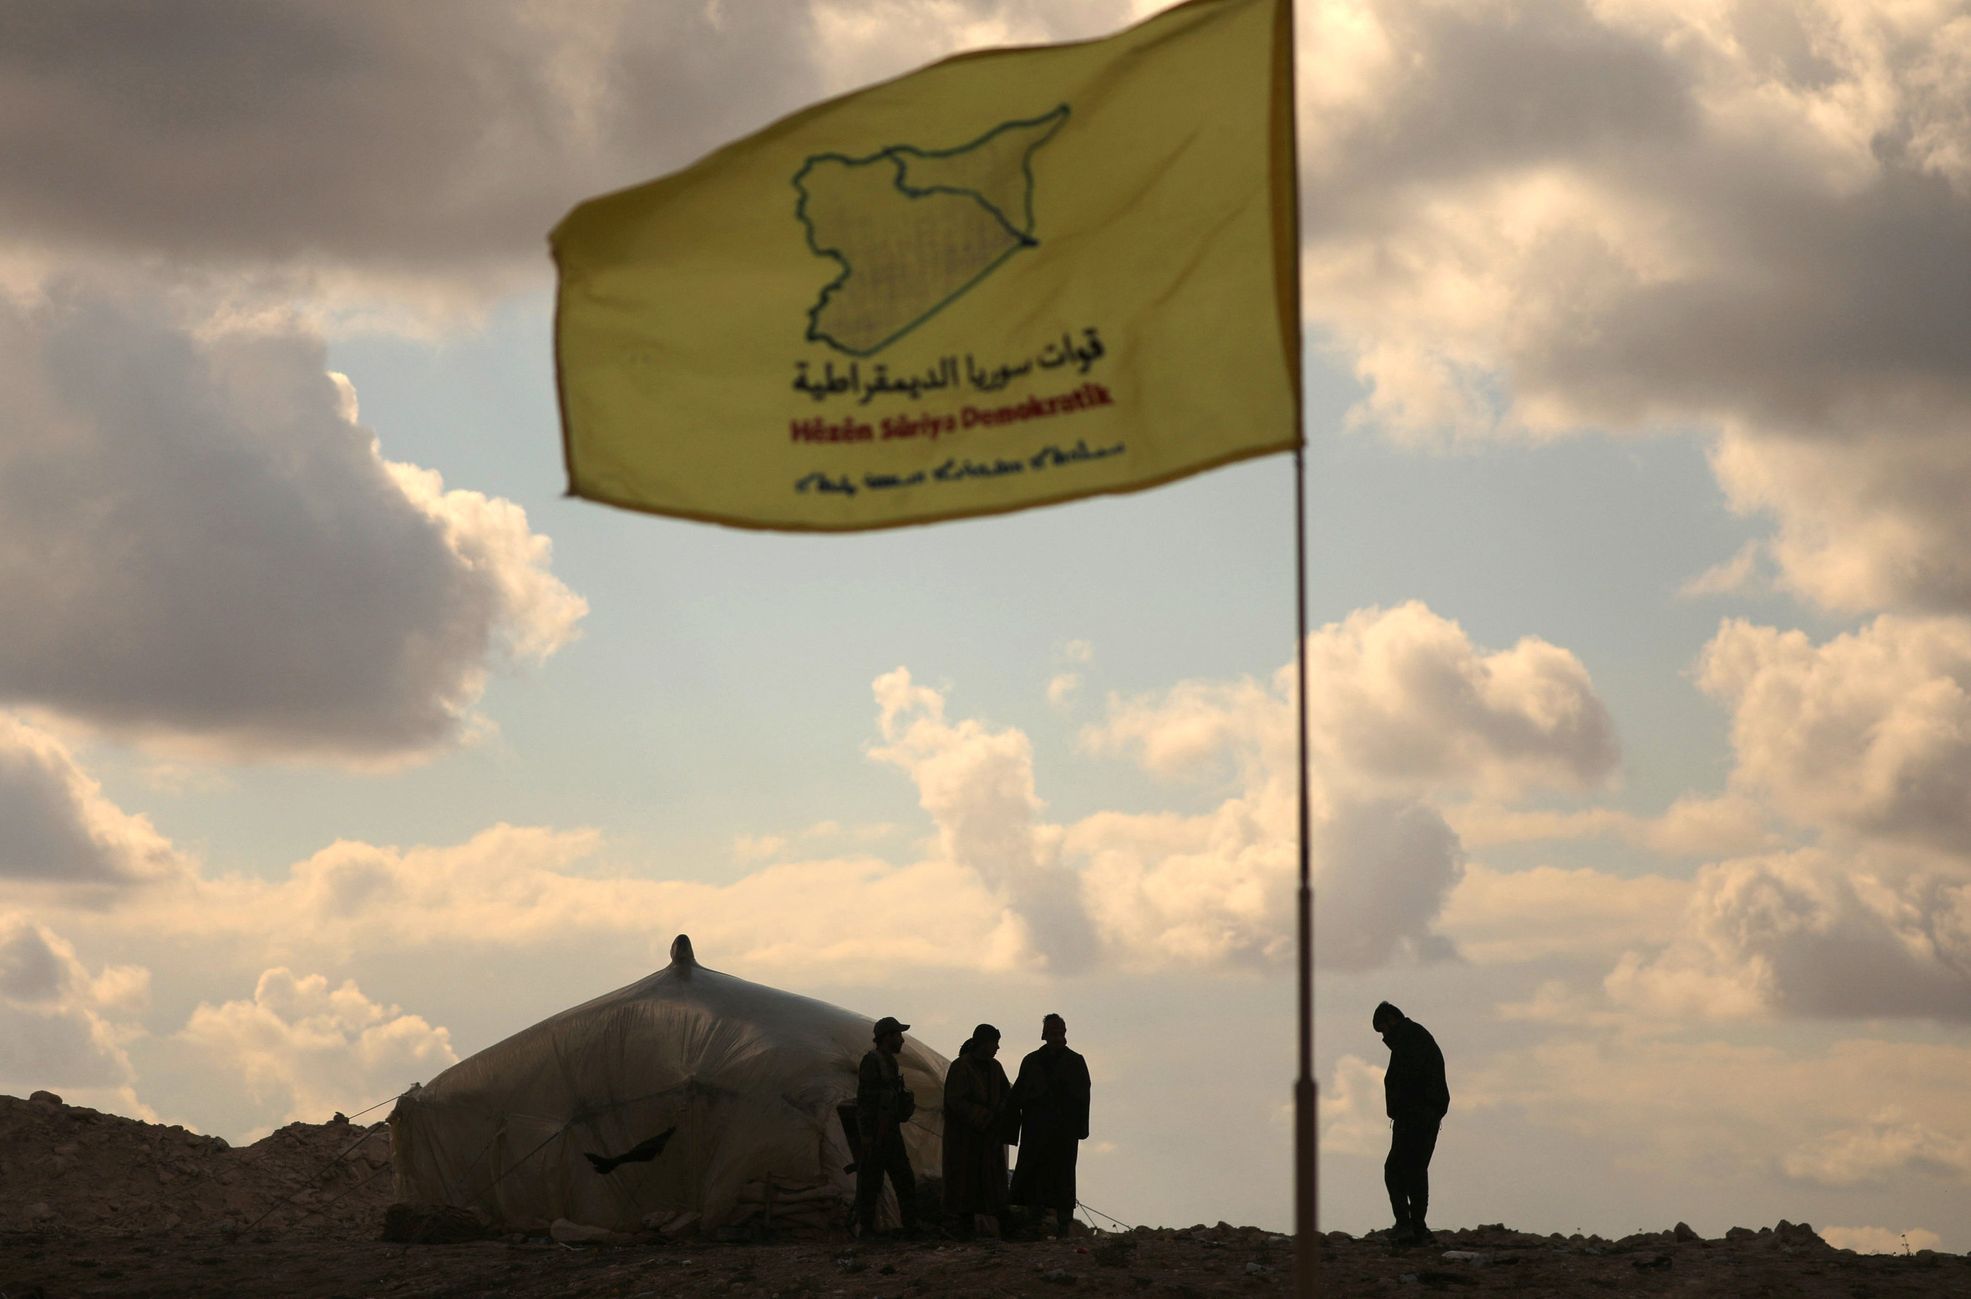 Bitva o Baghúz v Sýrii - členové SDF